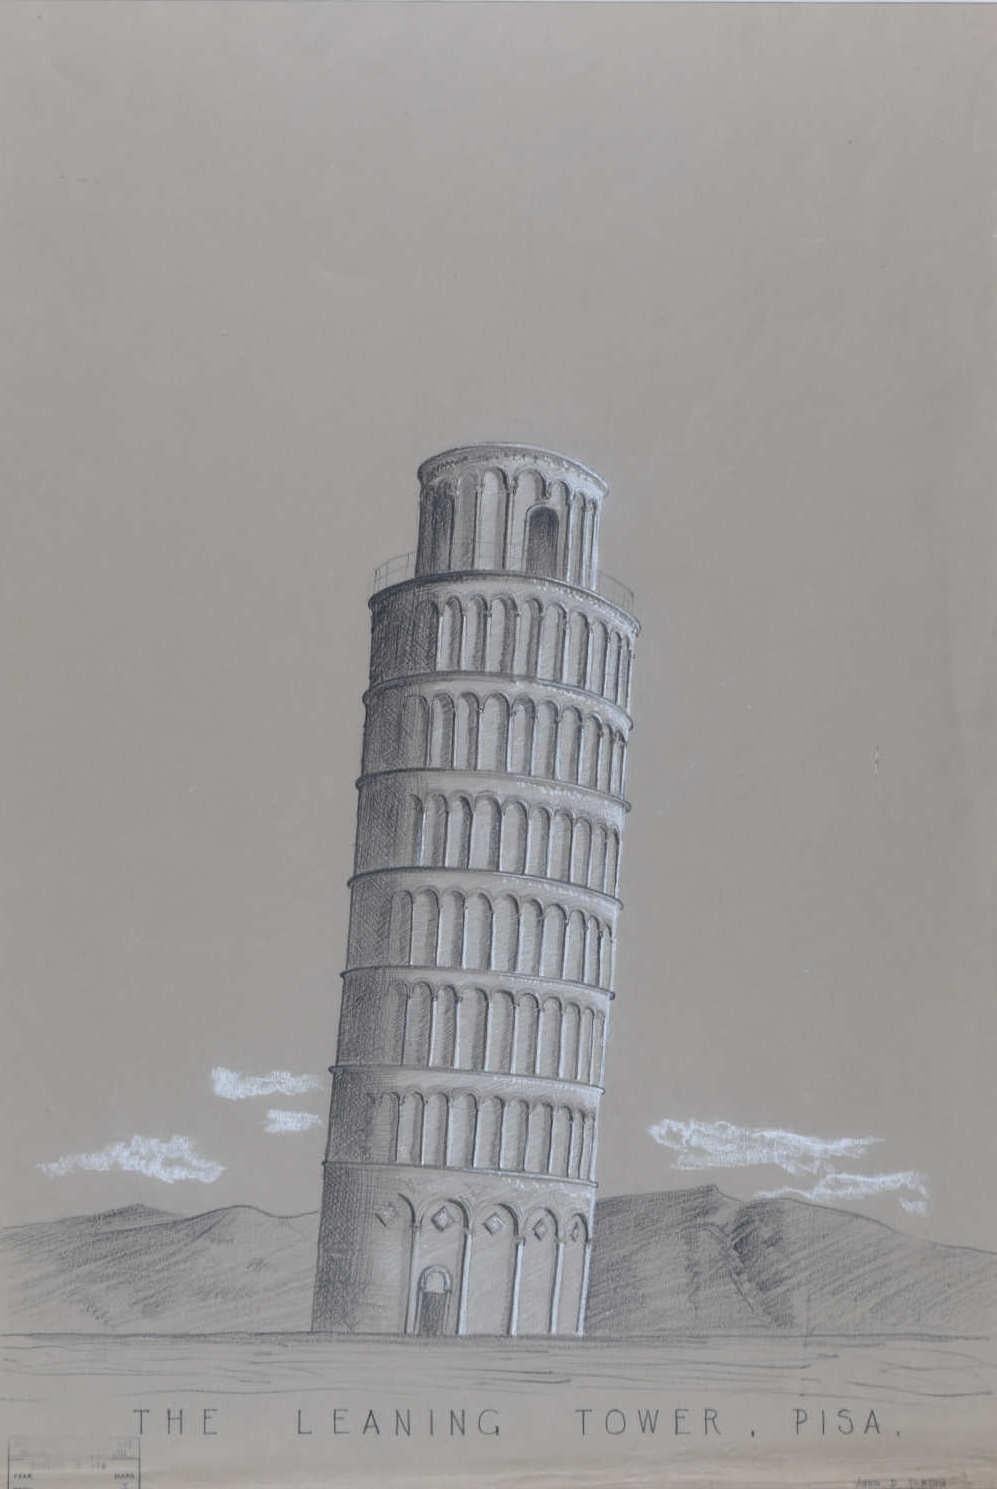 John D Paxton Landscape Art – Leaning Tower of Pisa, Italien, architektonische Zeichnung von John Paxton